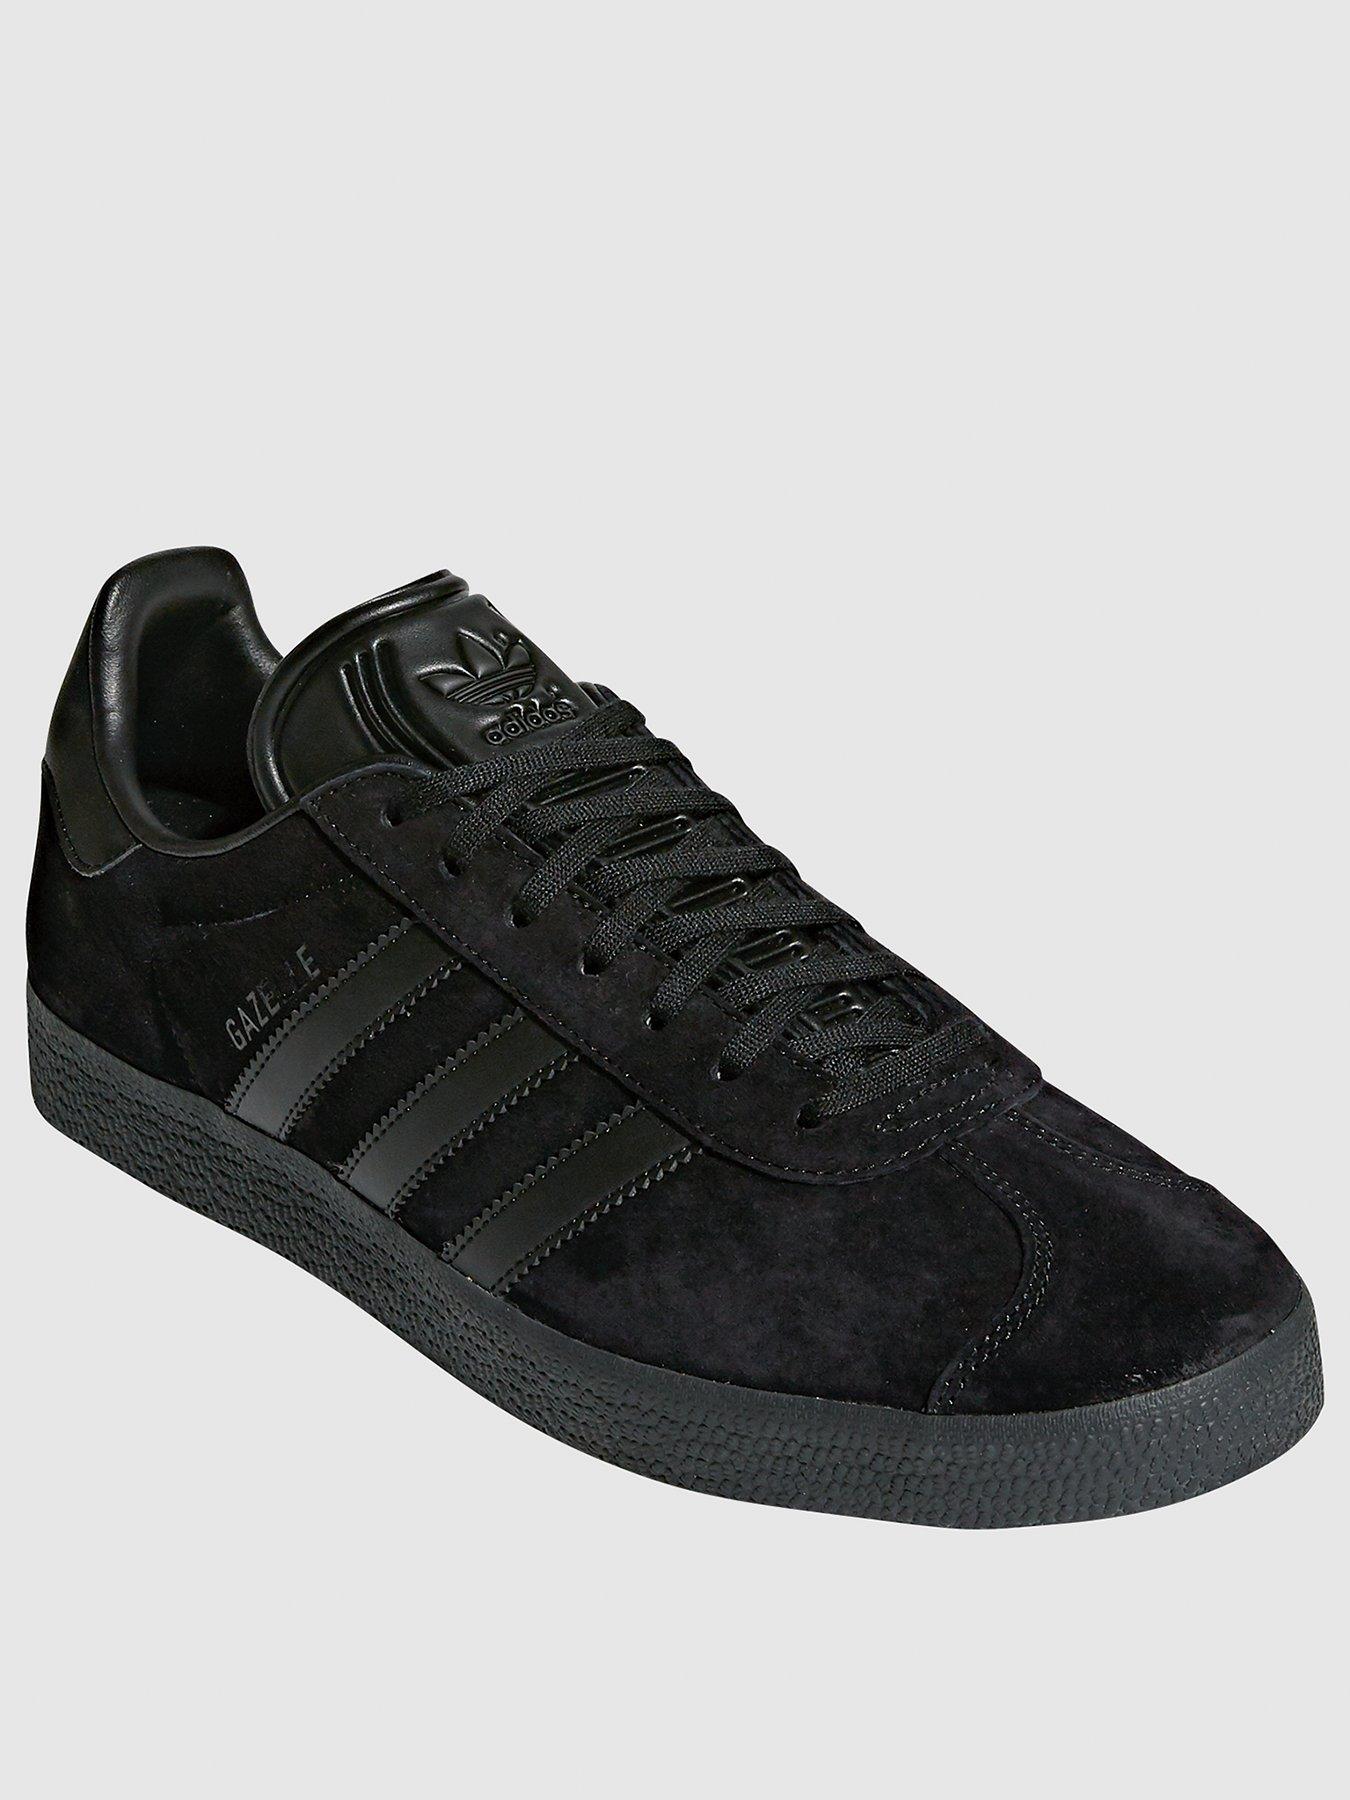 adidas gazelle black leather size 6